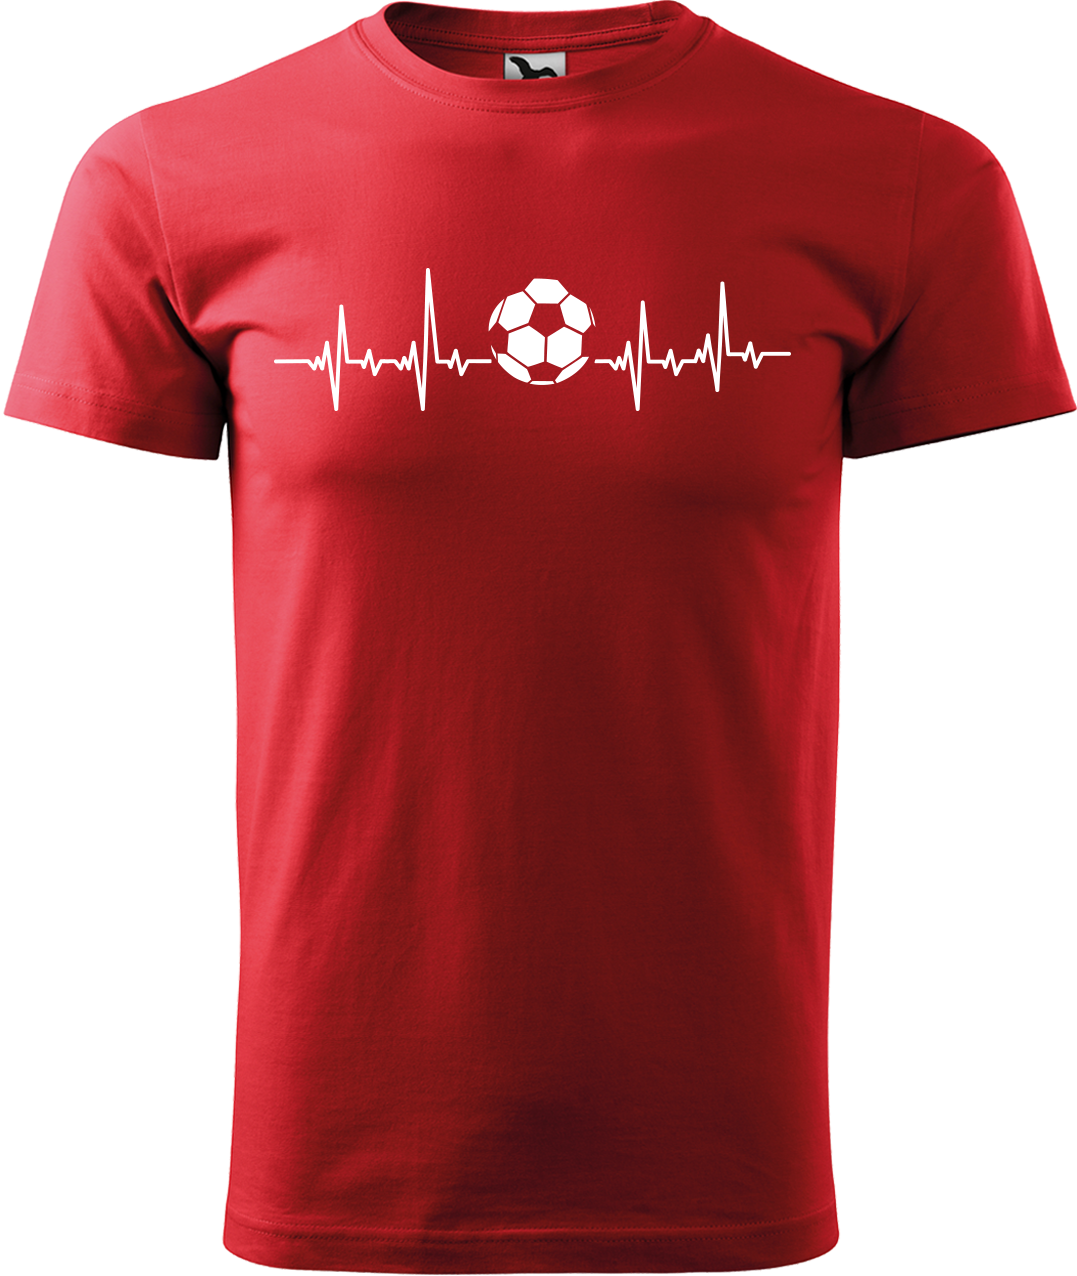 Tričko pro fotbalistu - Fotbalistův kardiogram Velikost: XL, Barva: Červená (07)